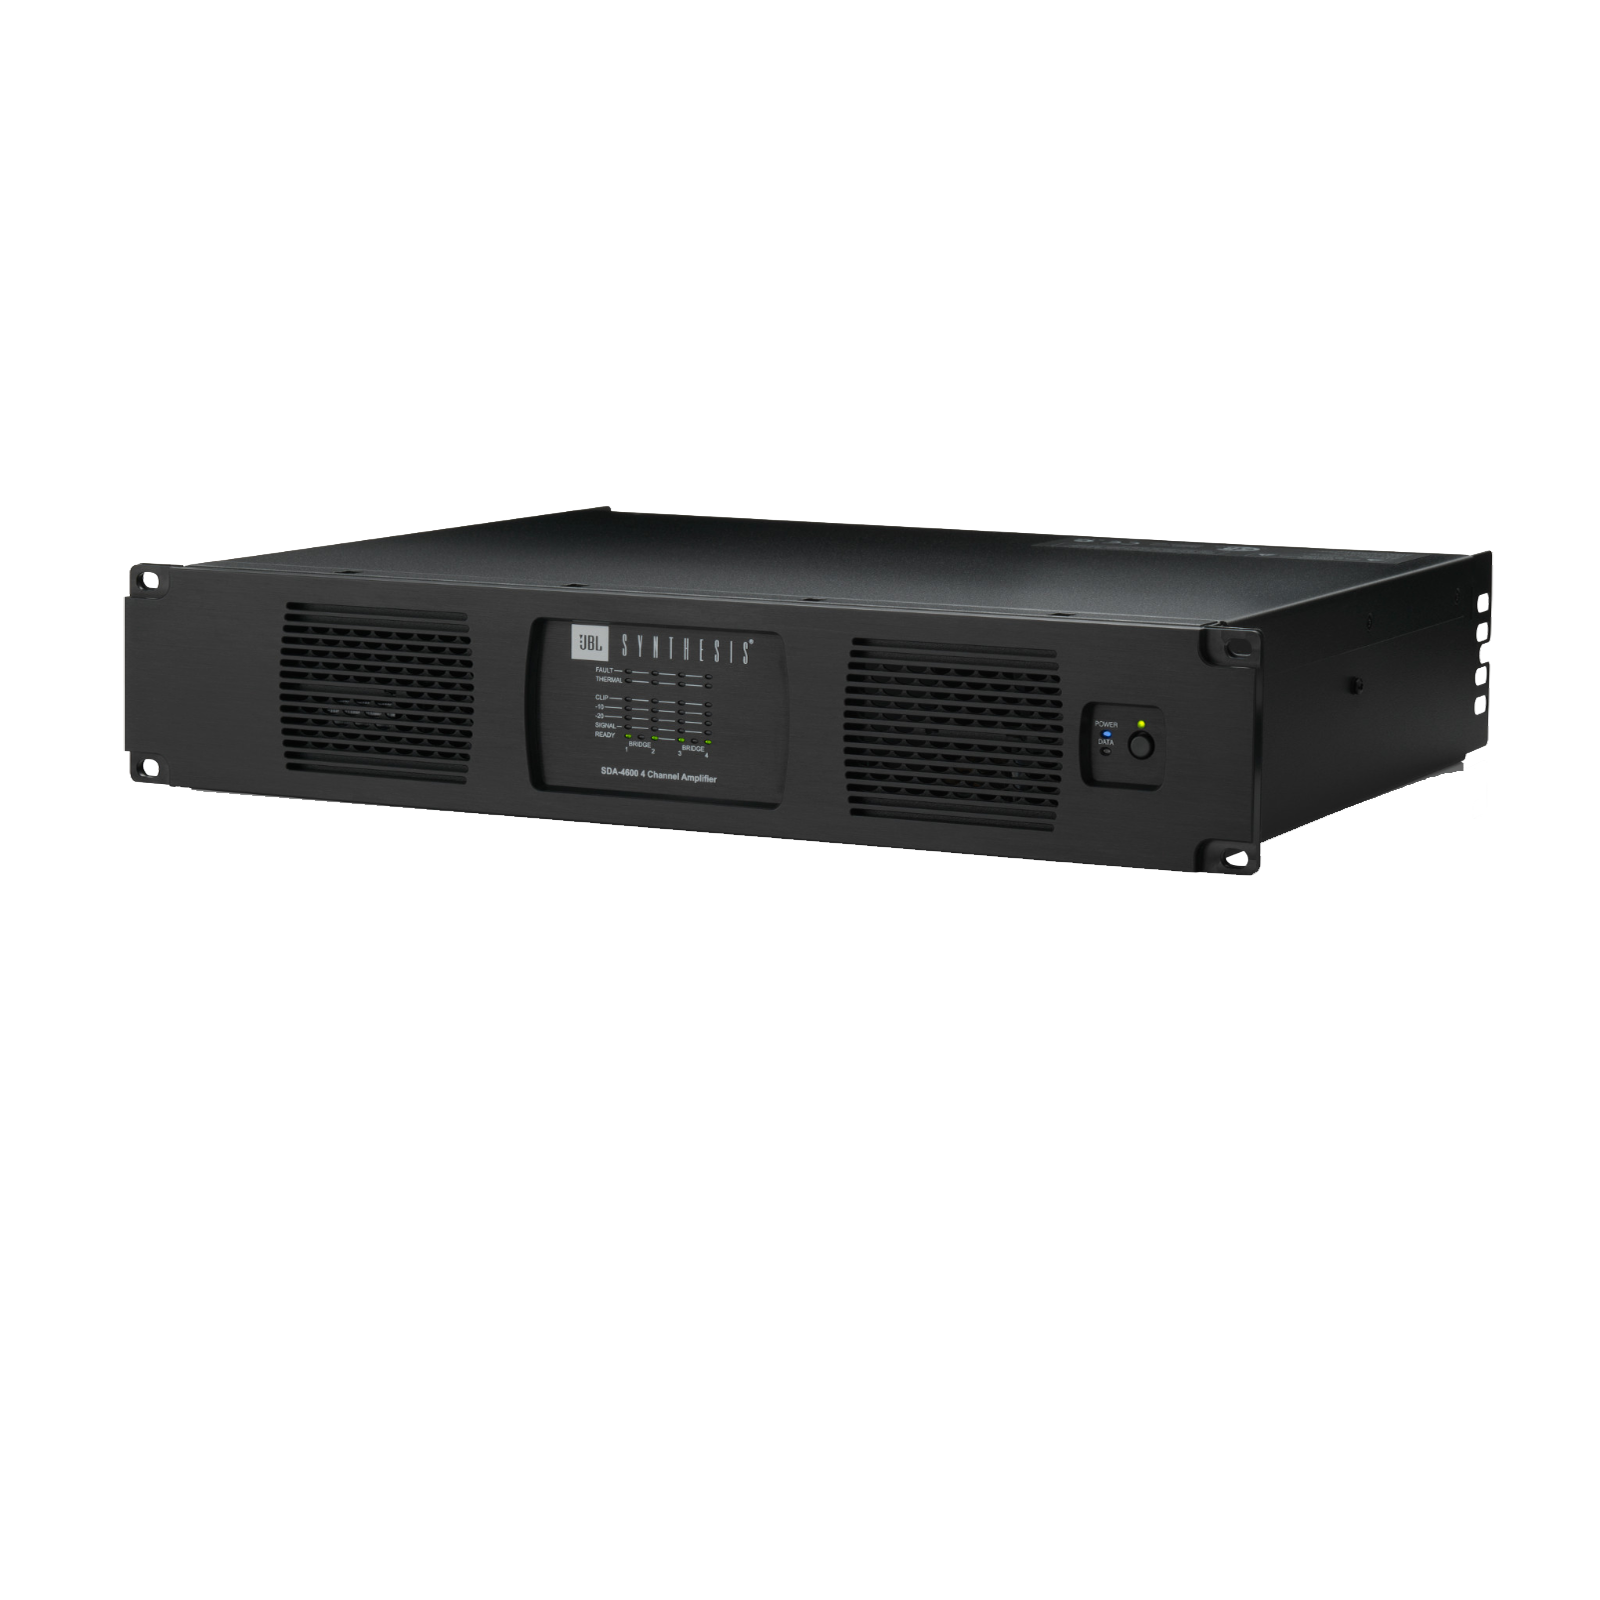 SDA-4600 - Black - 4-channel Bridgeable Class D Amplifier - Detailshot 5